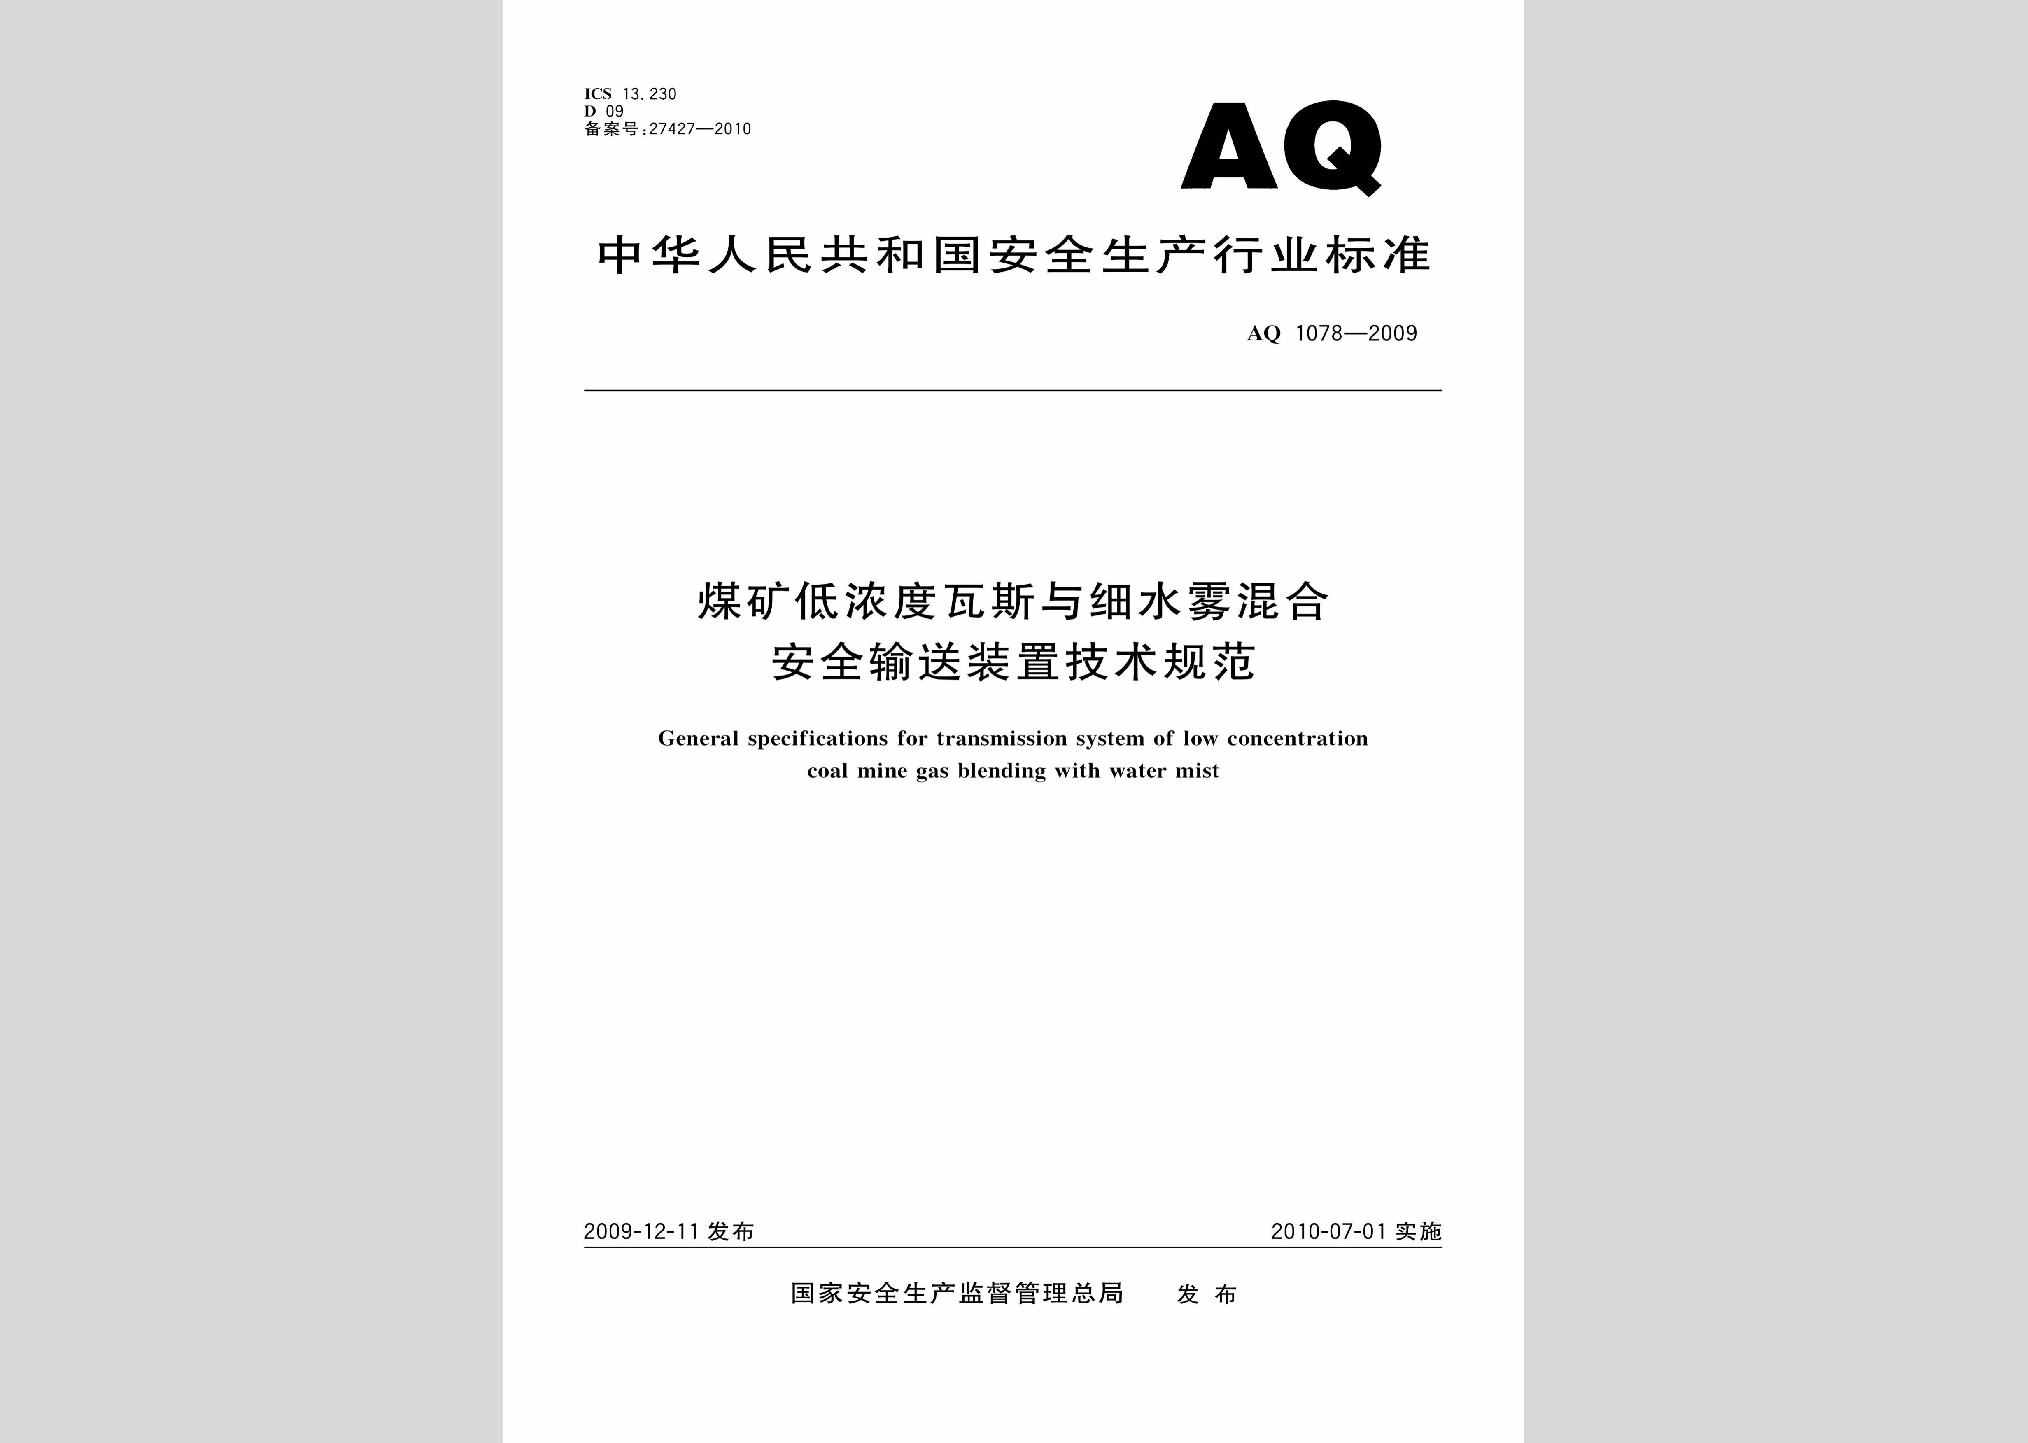 AQ1078-2009：煤矿低浓度瓦斯与细水雾混合安全输送装置技术规范